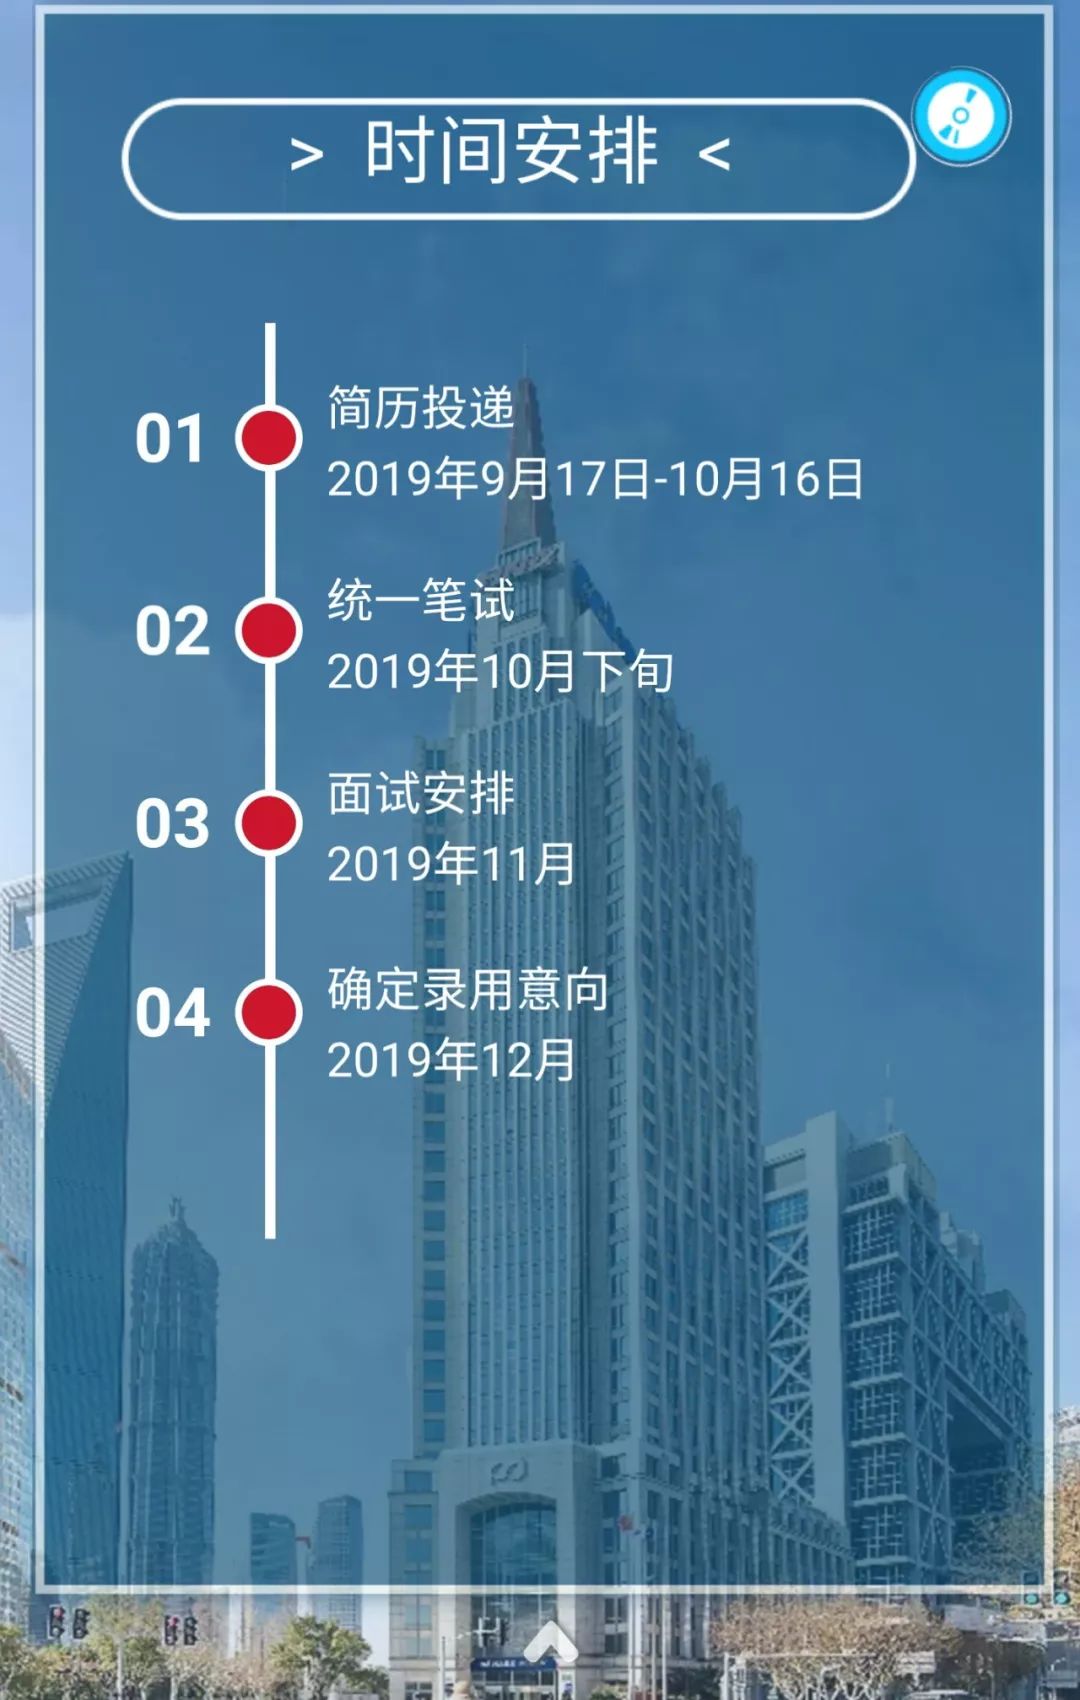 上海浦东发展银行招聘_鄂尔多斯日报社多媒体数字报文章(2)